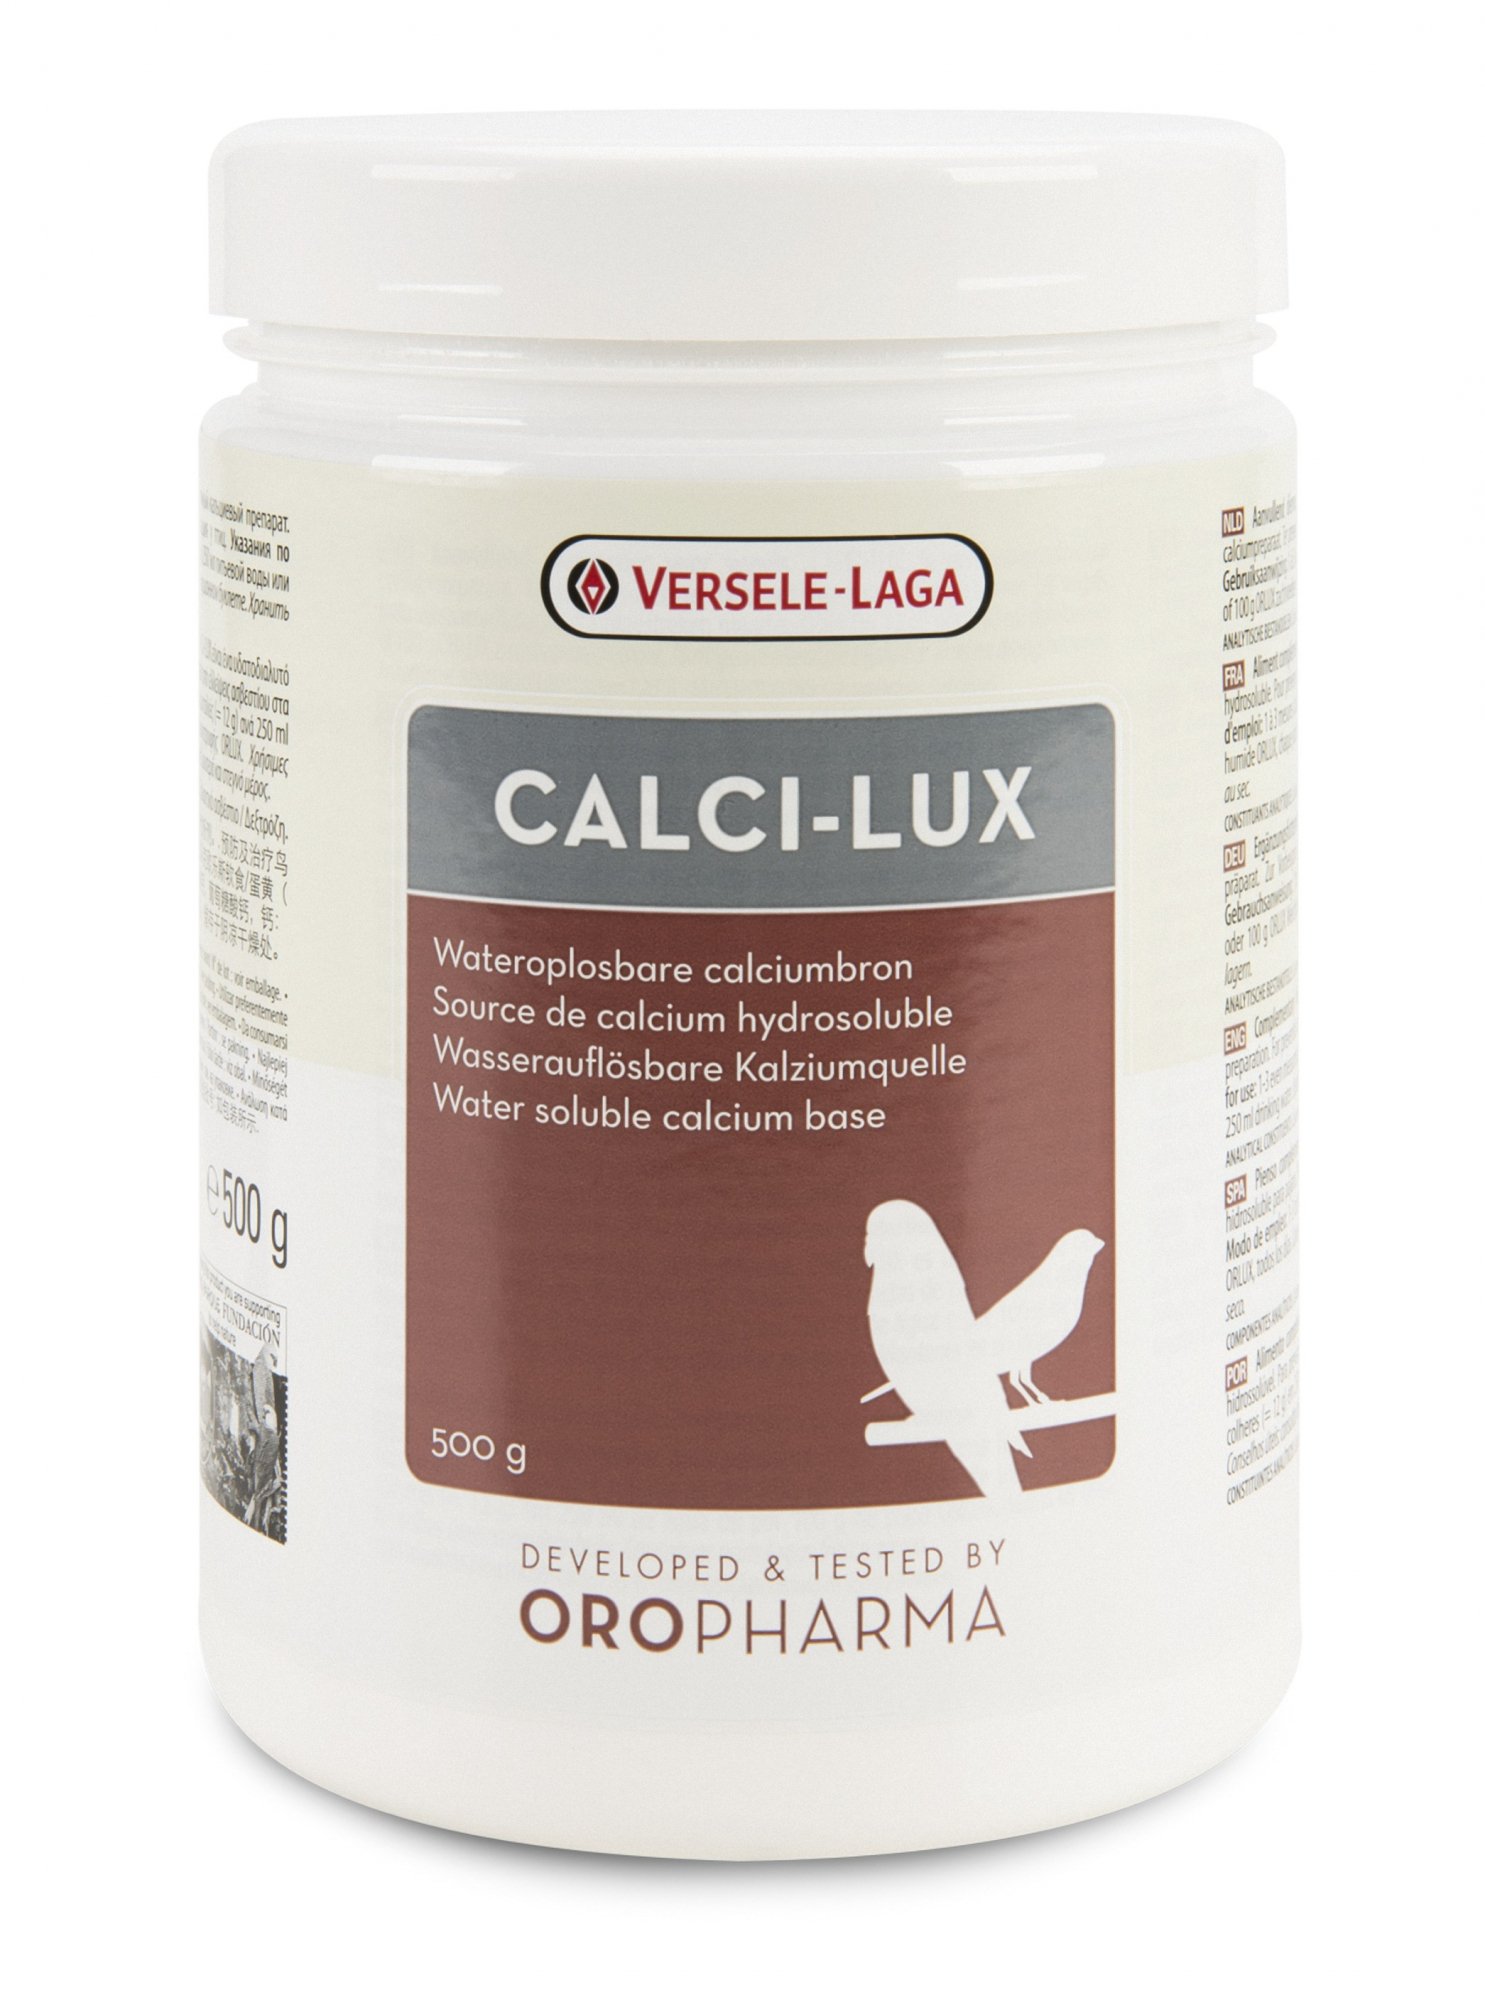 Oropharma Calci-Lux wasserlösliche Calciumquelle